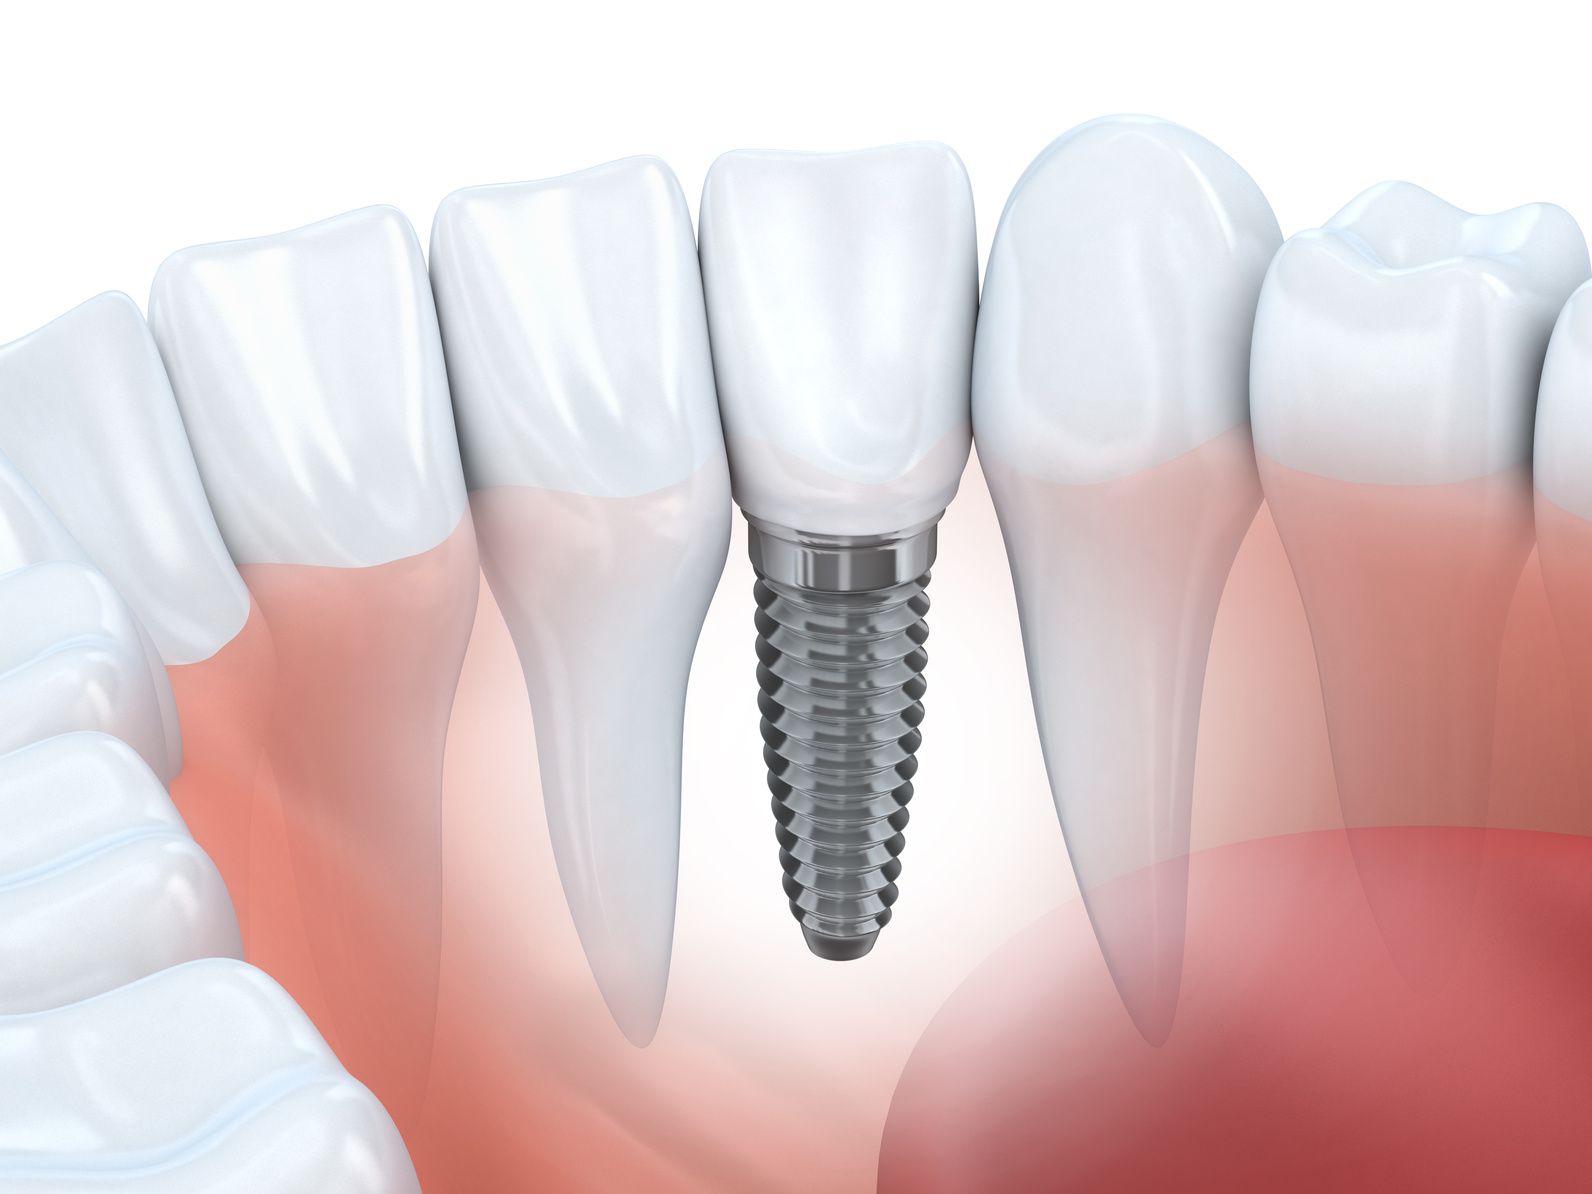 Dental Implant Procedure Timeline